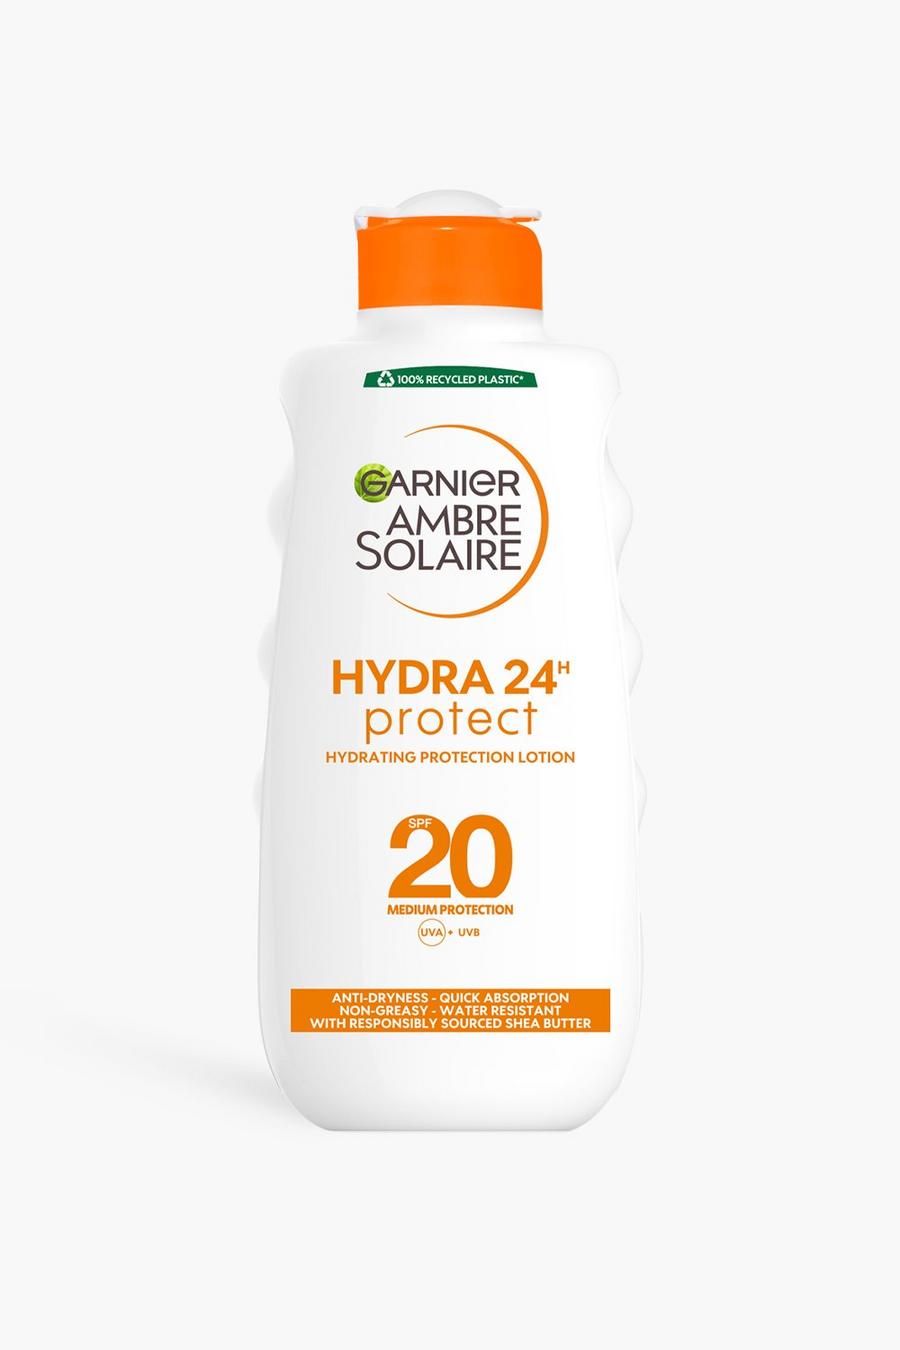 Garnier Ambre Solaire - Crema solare ultra idratante al burro di karité con protezione SPF 20, 200ml (RISPARMI IL 35%), White blanco